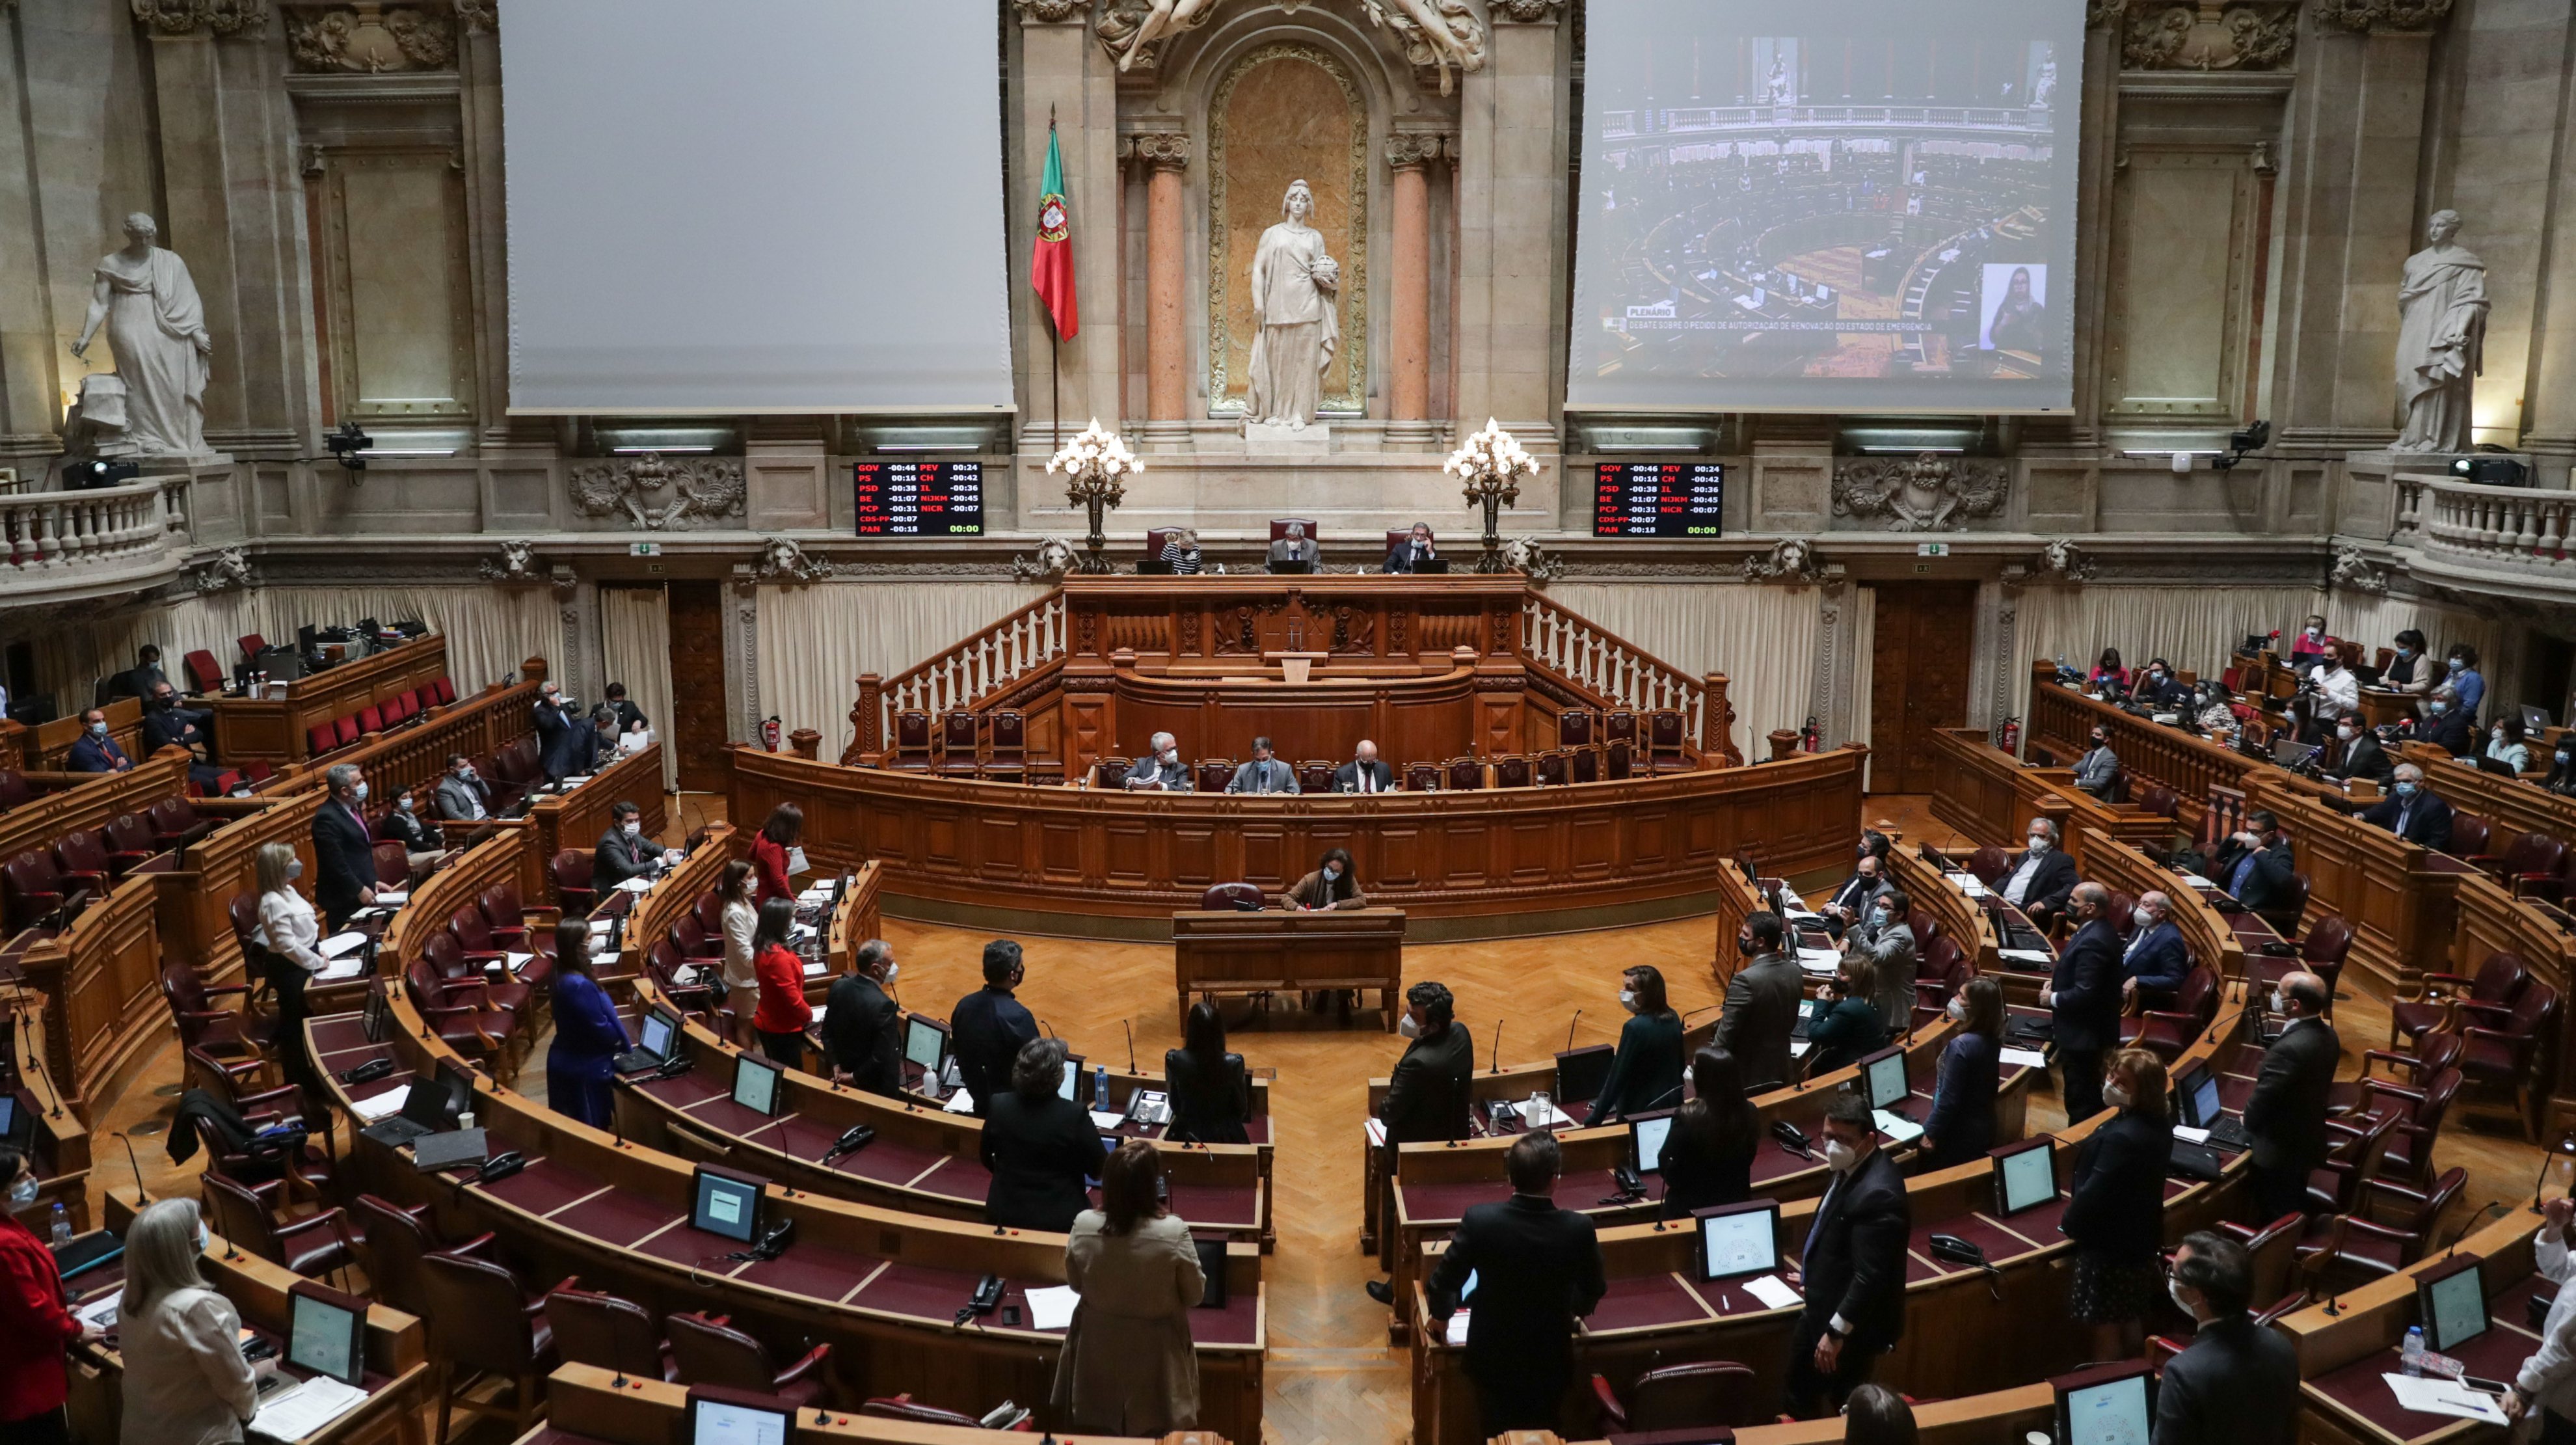 O 14º estado de emergência foi decretado pelo Presidente da República, Marcelo Rebelo de Sousa, a 25 de março, após a autorização do parlamento, com votos a favor de PS, PSD, CDS-PP e PAN e a abstenção do BE